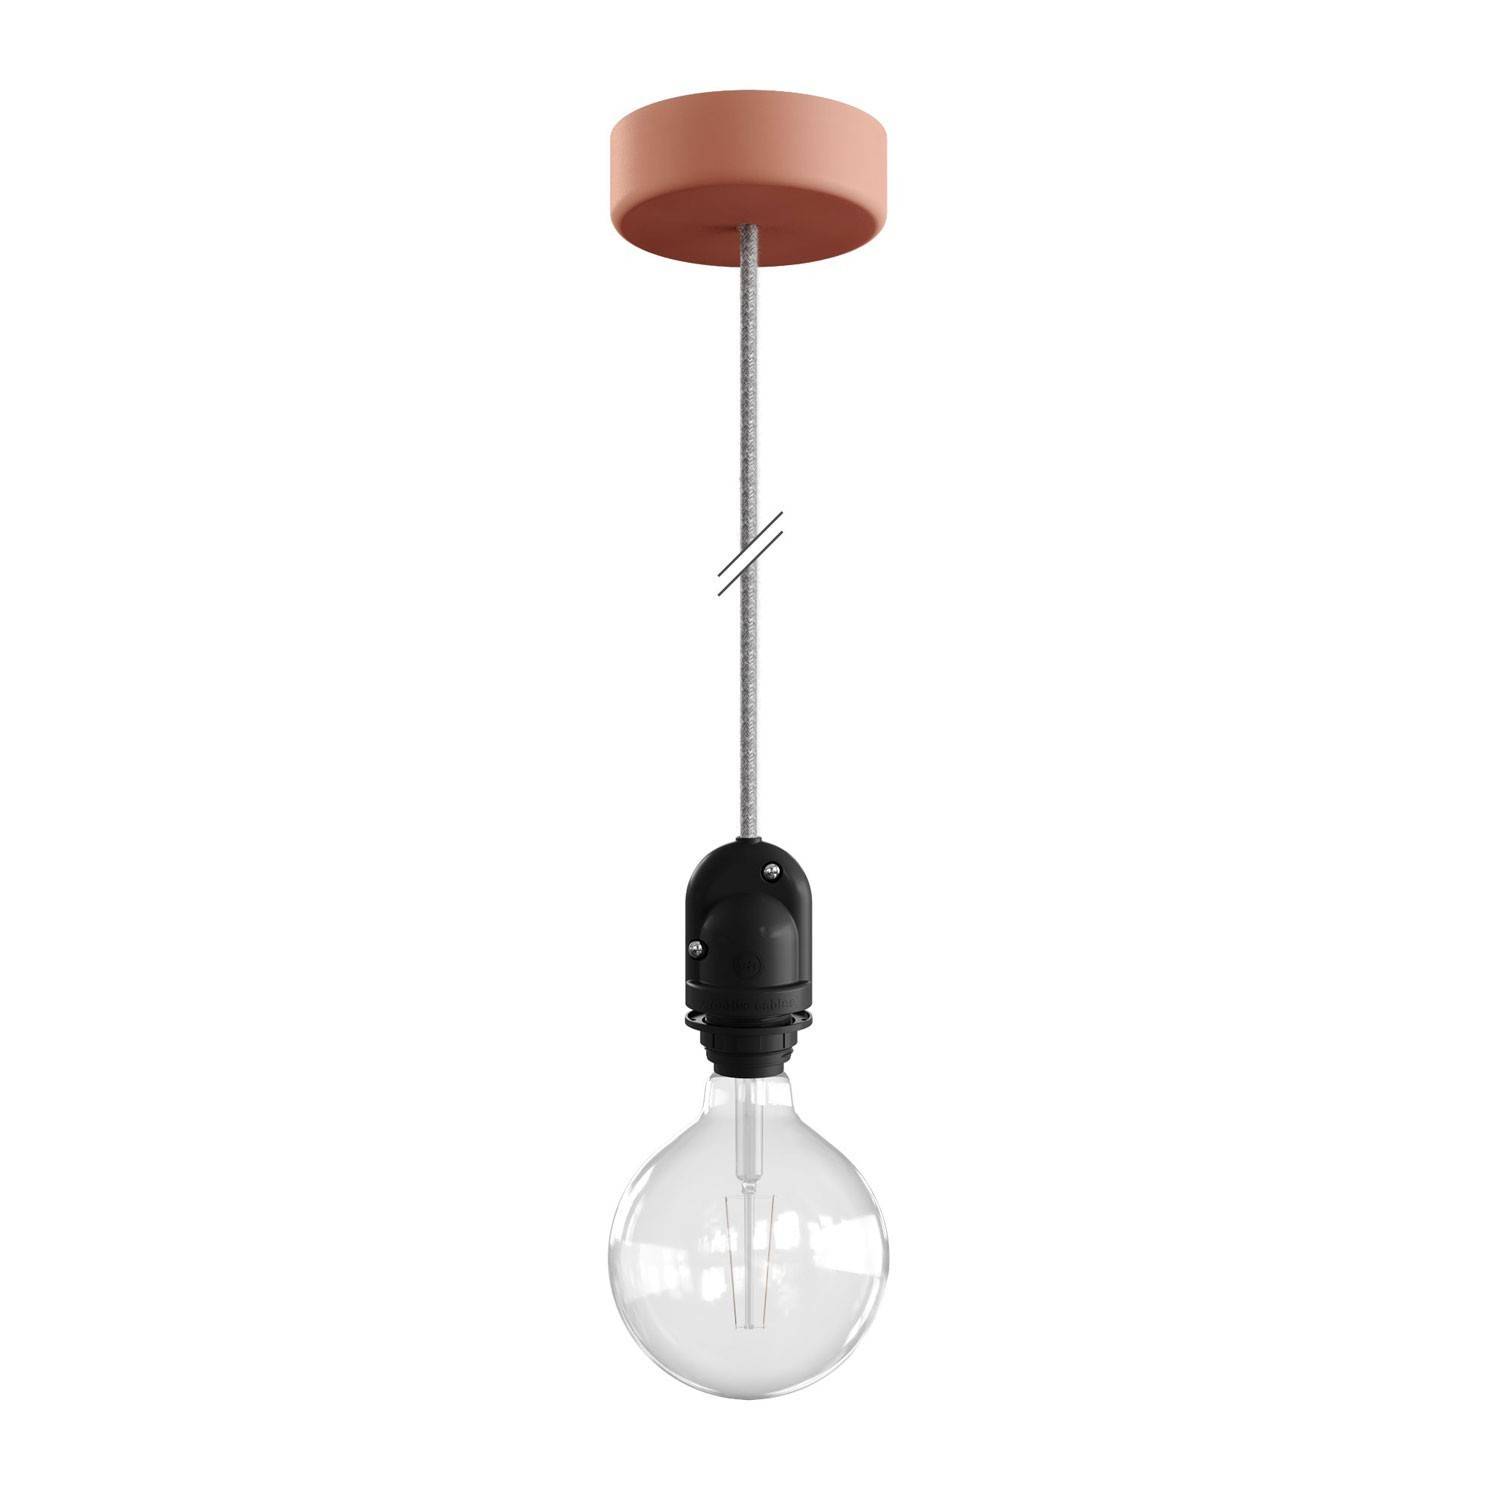 Lampa de exterior EIVA pentru abajururi cu cablu textil de 1,5 metri, rozetă de tavan din silicon și suport de lampă rezistent l